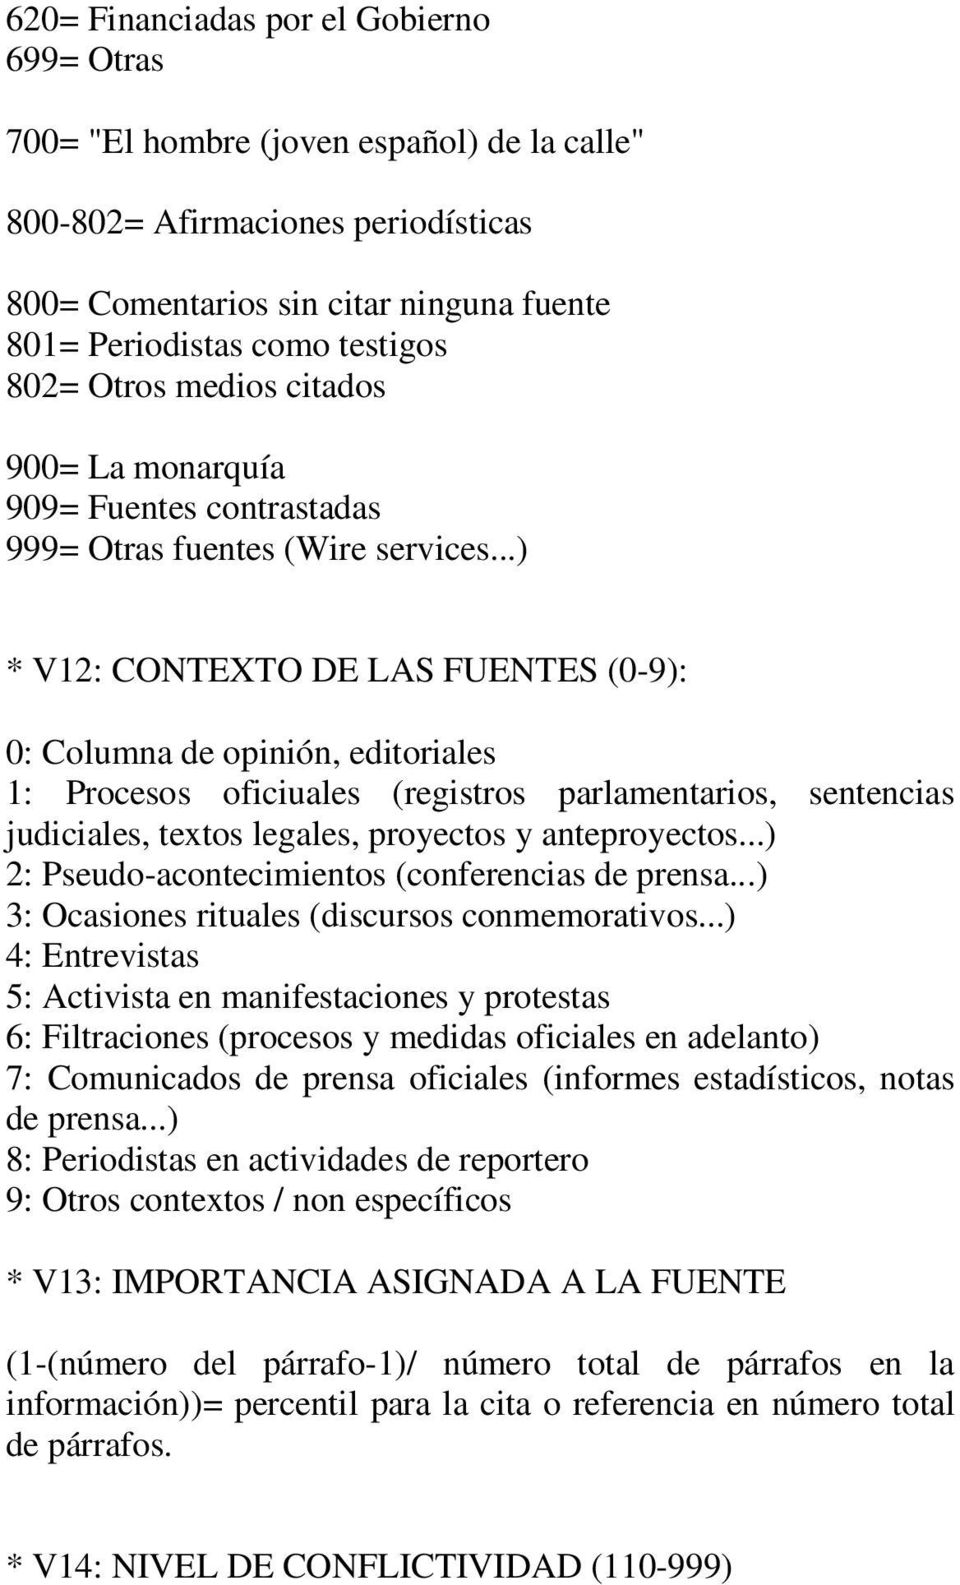 ..) * V12: CONTEXTO DE LAS FUENTES (0-9): 0: Columna de opinión, editoriales 1: Procesos oficiuales (registros parlamentarios, sentencias judiciales, textos legales, proyectos y anteproyectos.